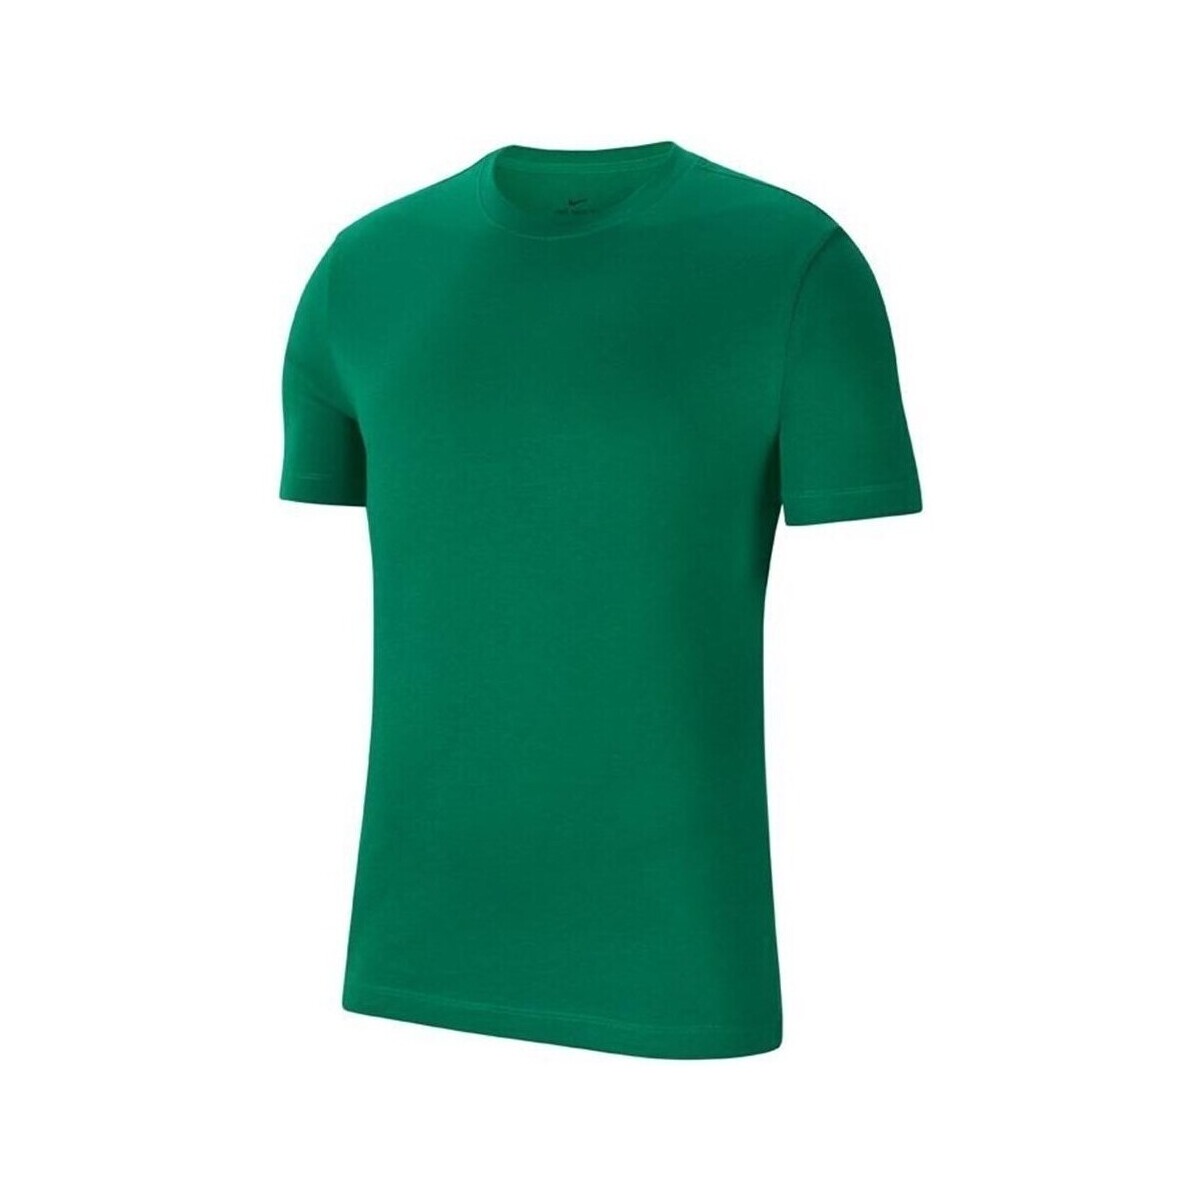 Vêtements Homme T-shirts manches courtes Nike Park 20 Tee Vert